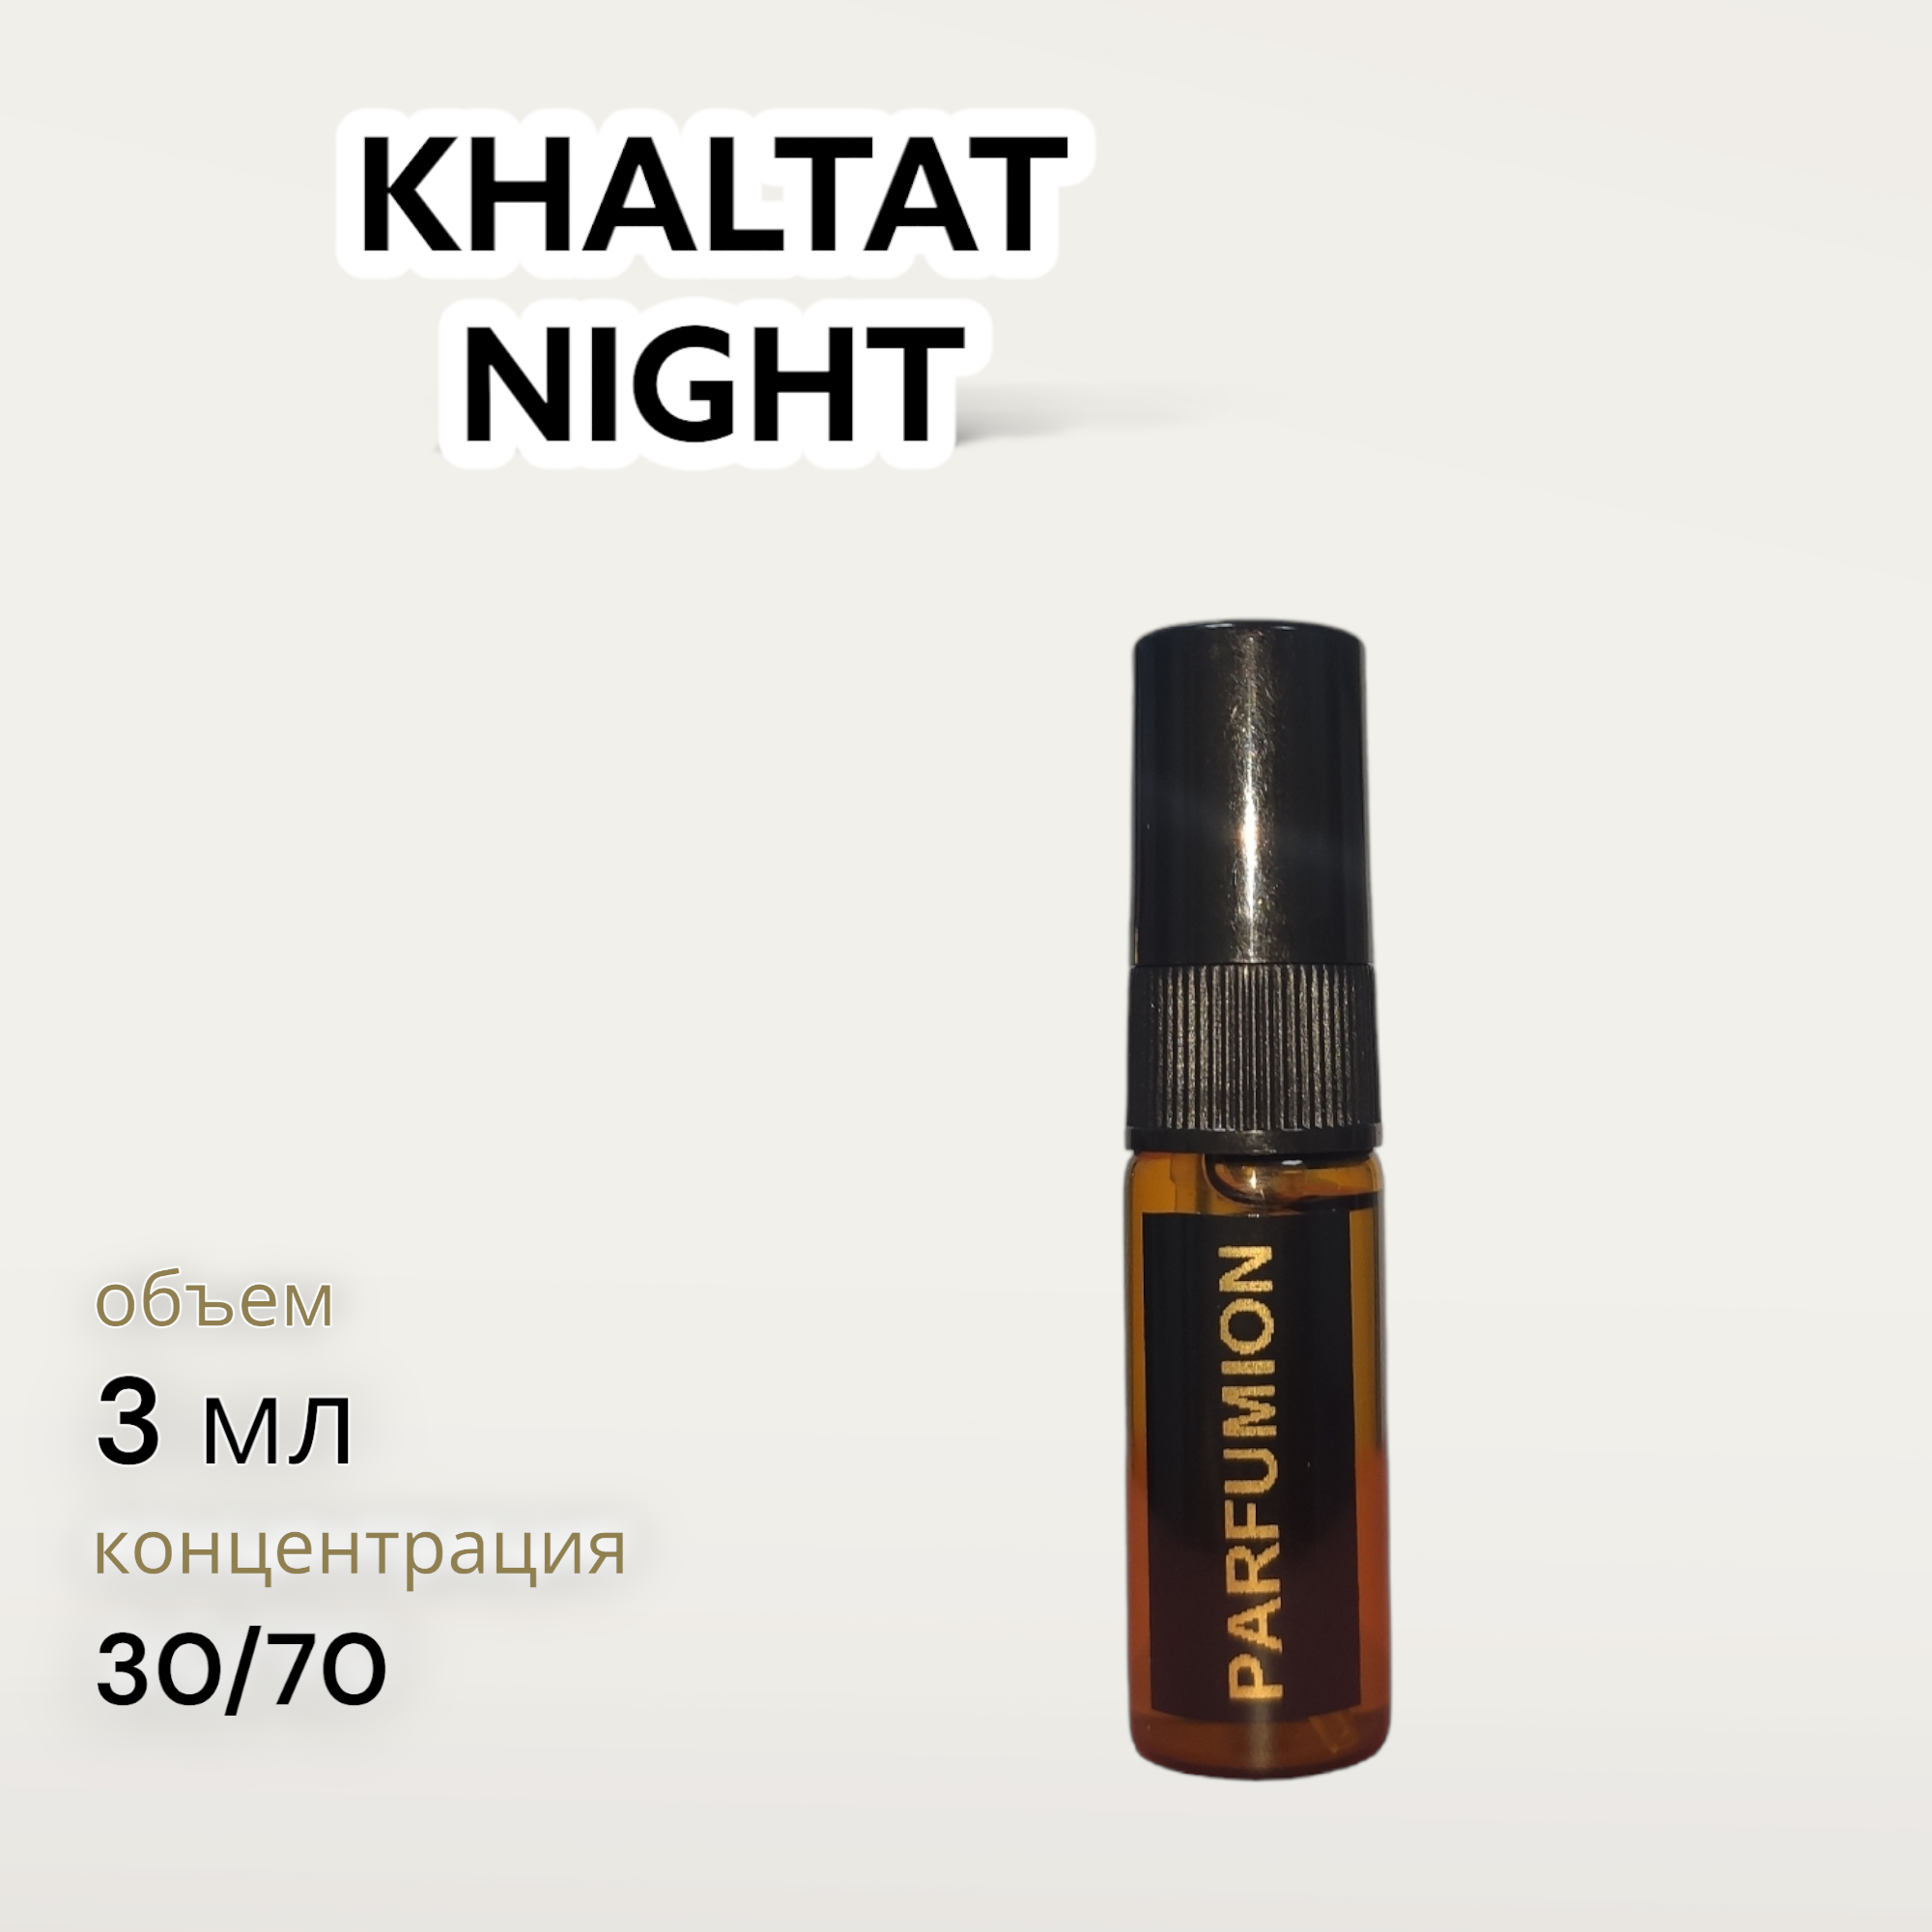 Духи "Khaltat Night" от Parfumion